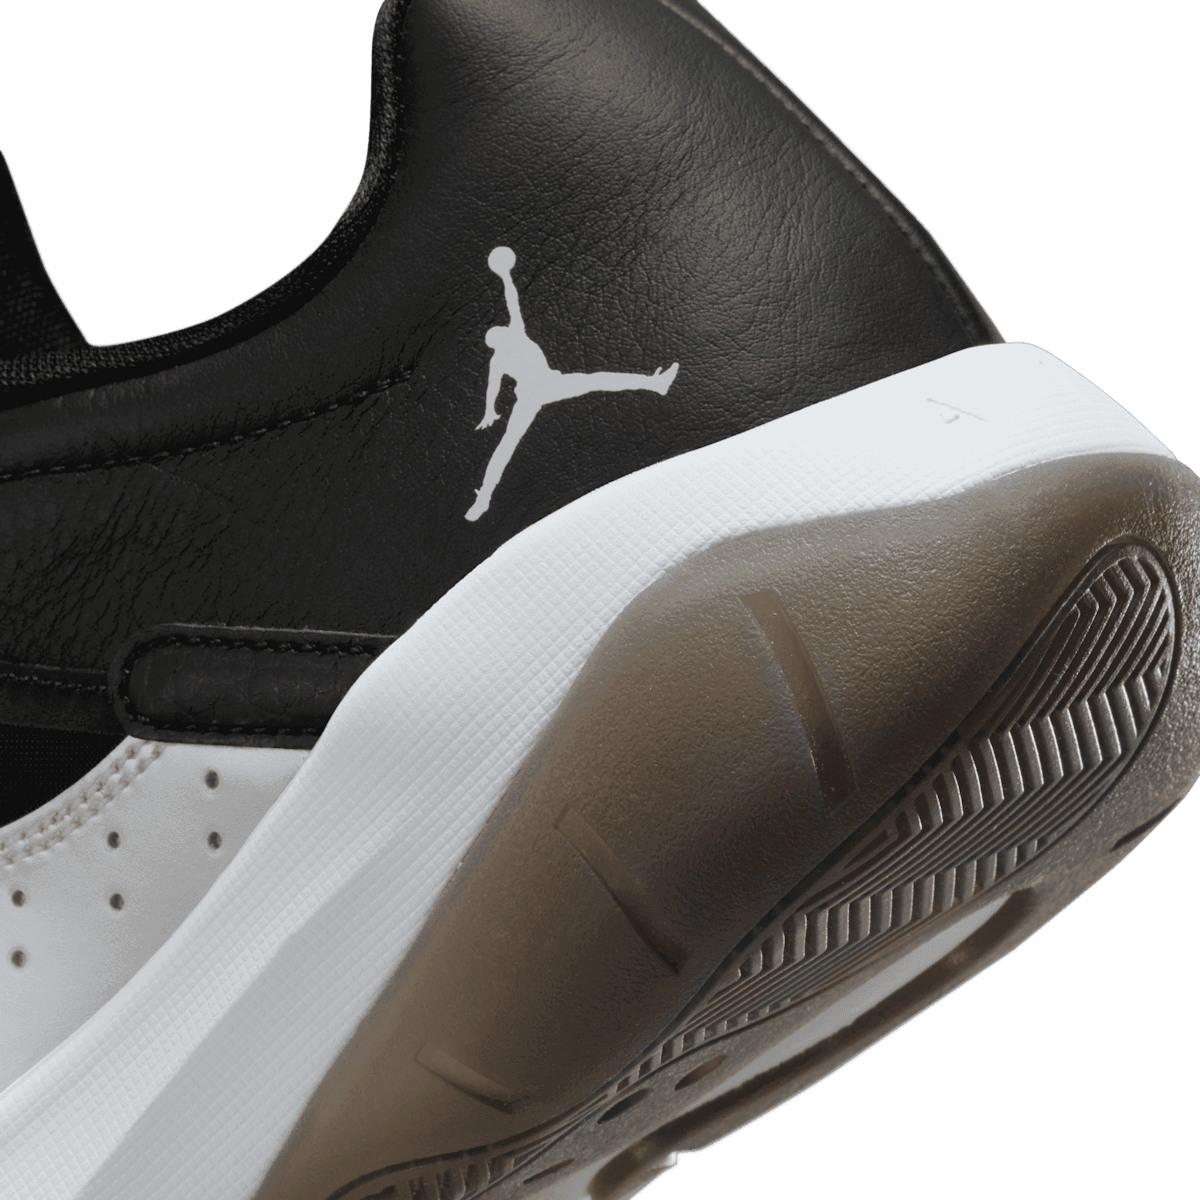 Air Jordan 11 CMFT Low Shoes in Black Angle 5